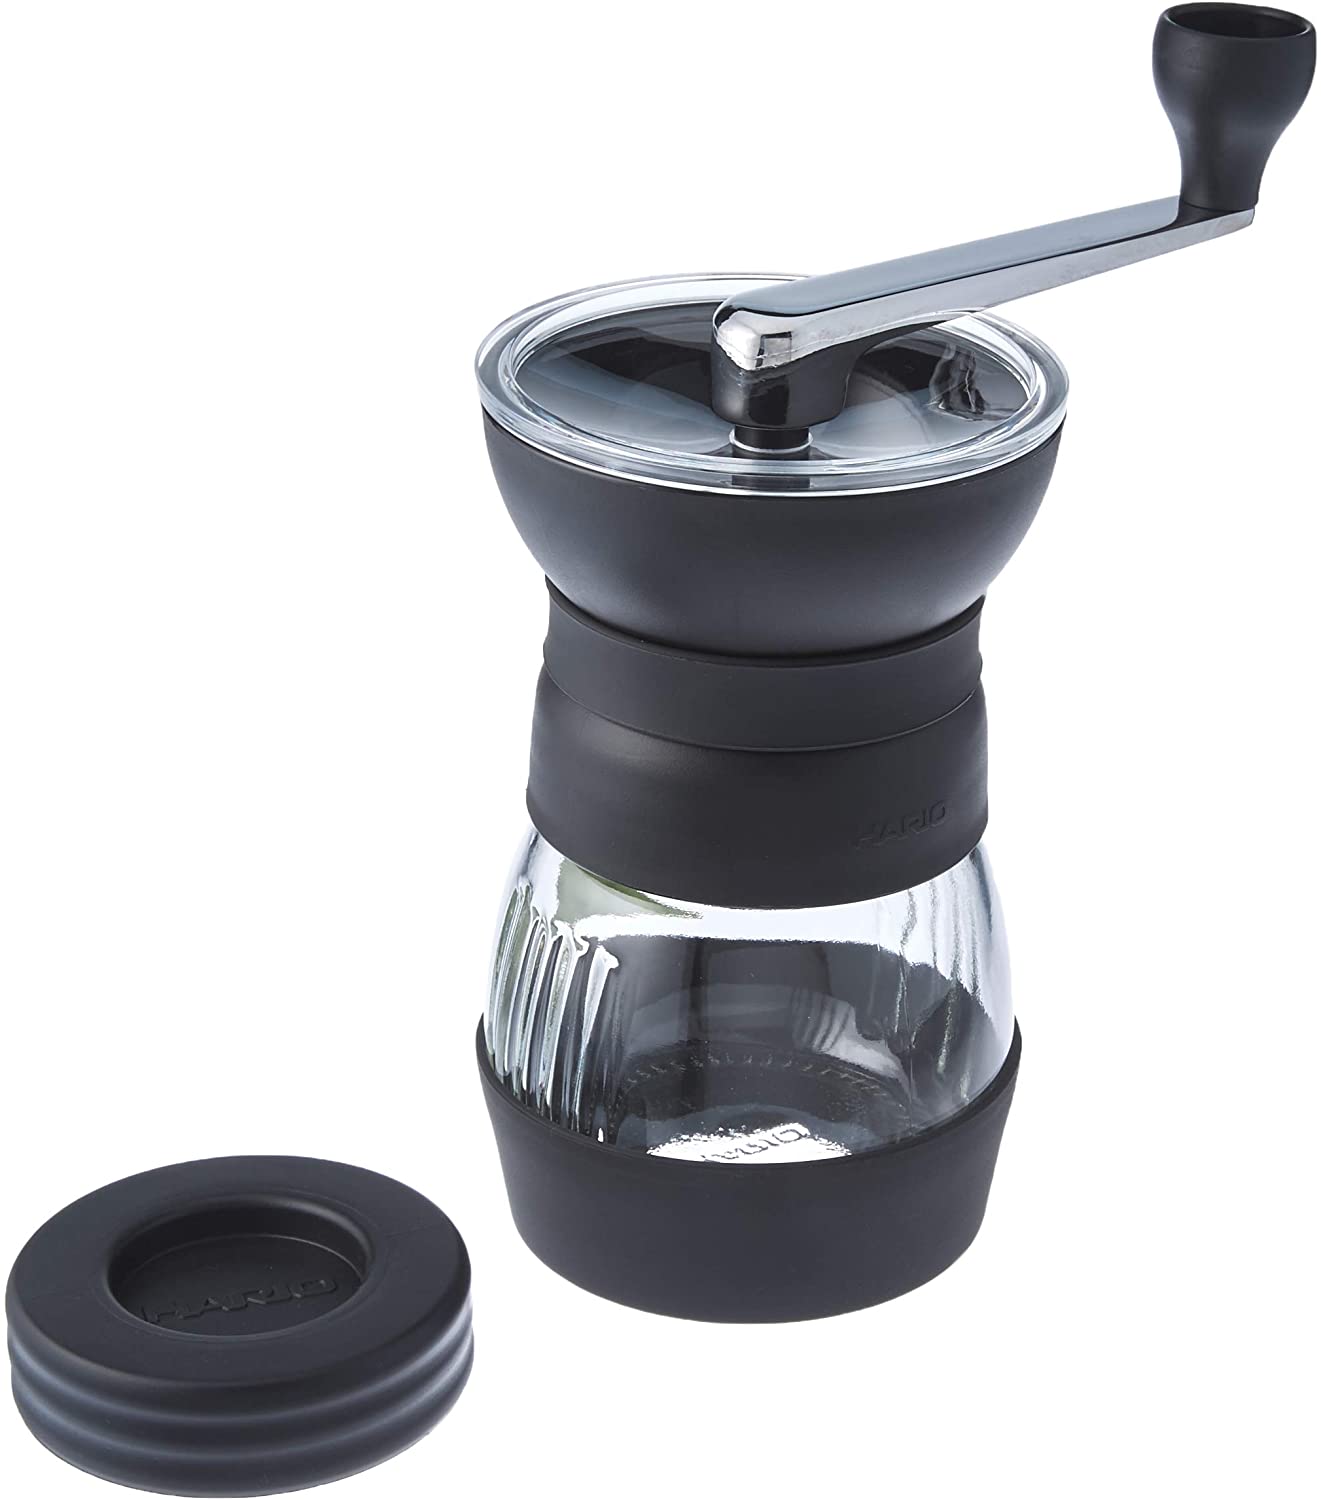 Hario “Skerton Pro” Ceramic Manual Coffee Grinder